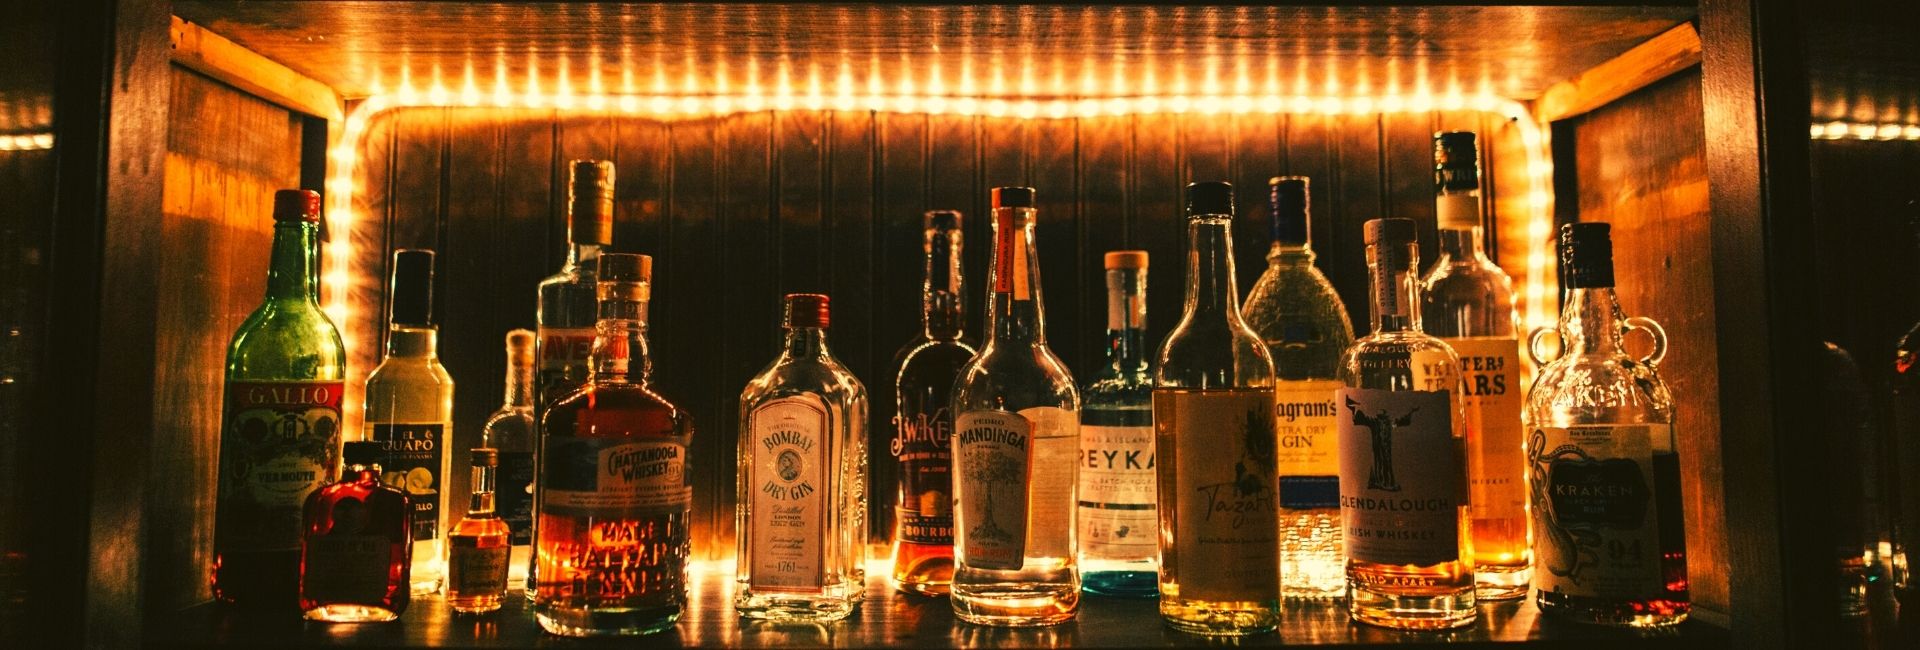 Types of whiskey